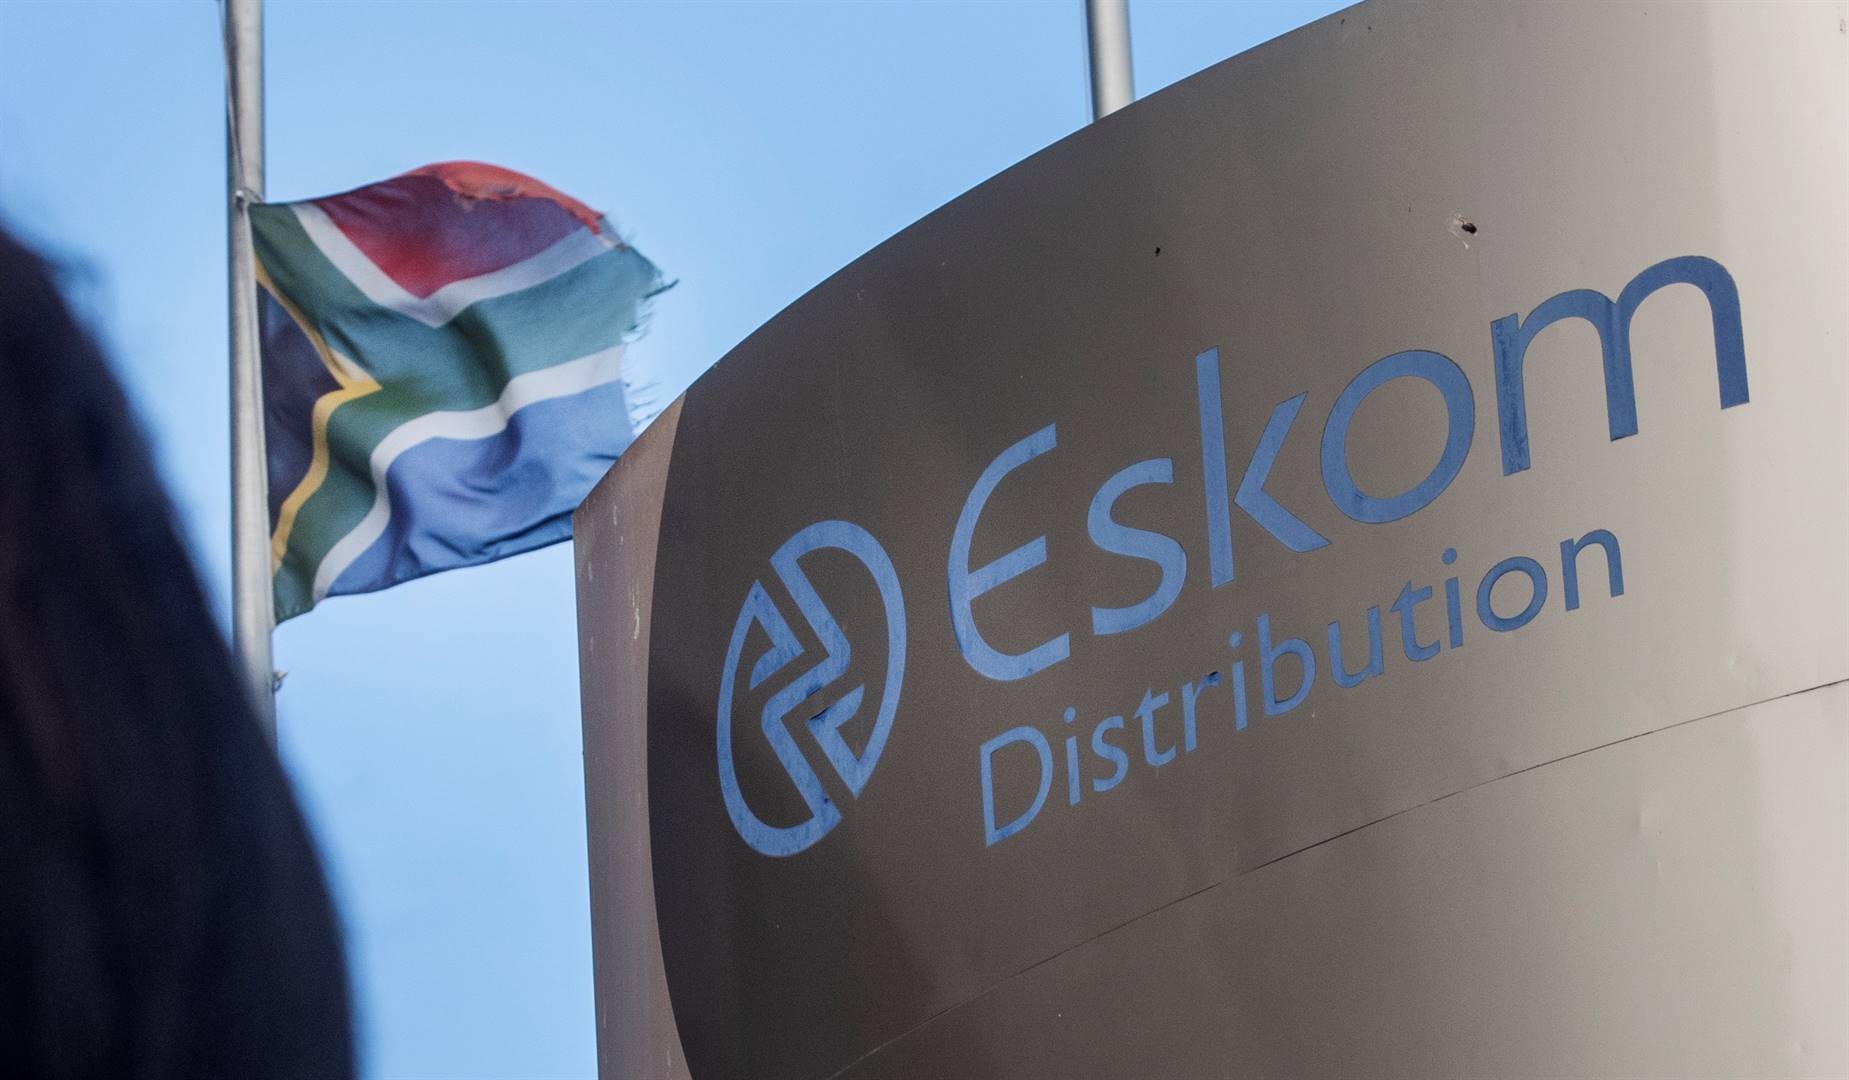 Looting has left Eskom depleted. 